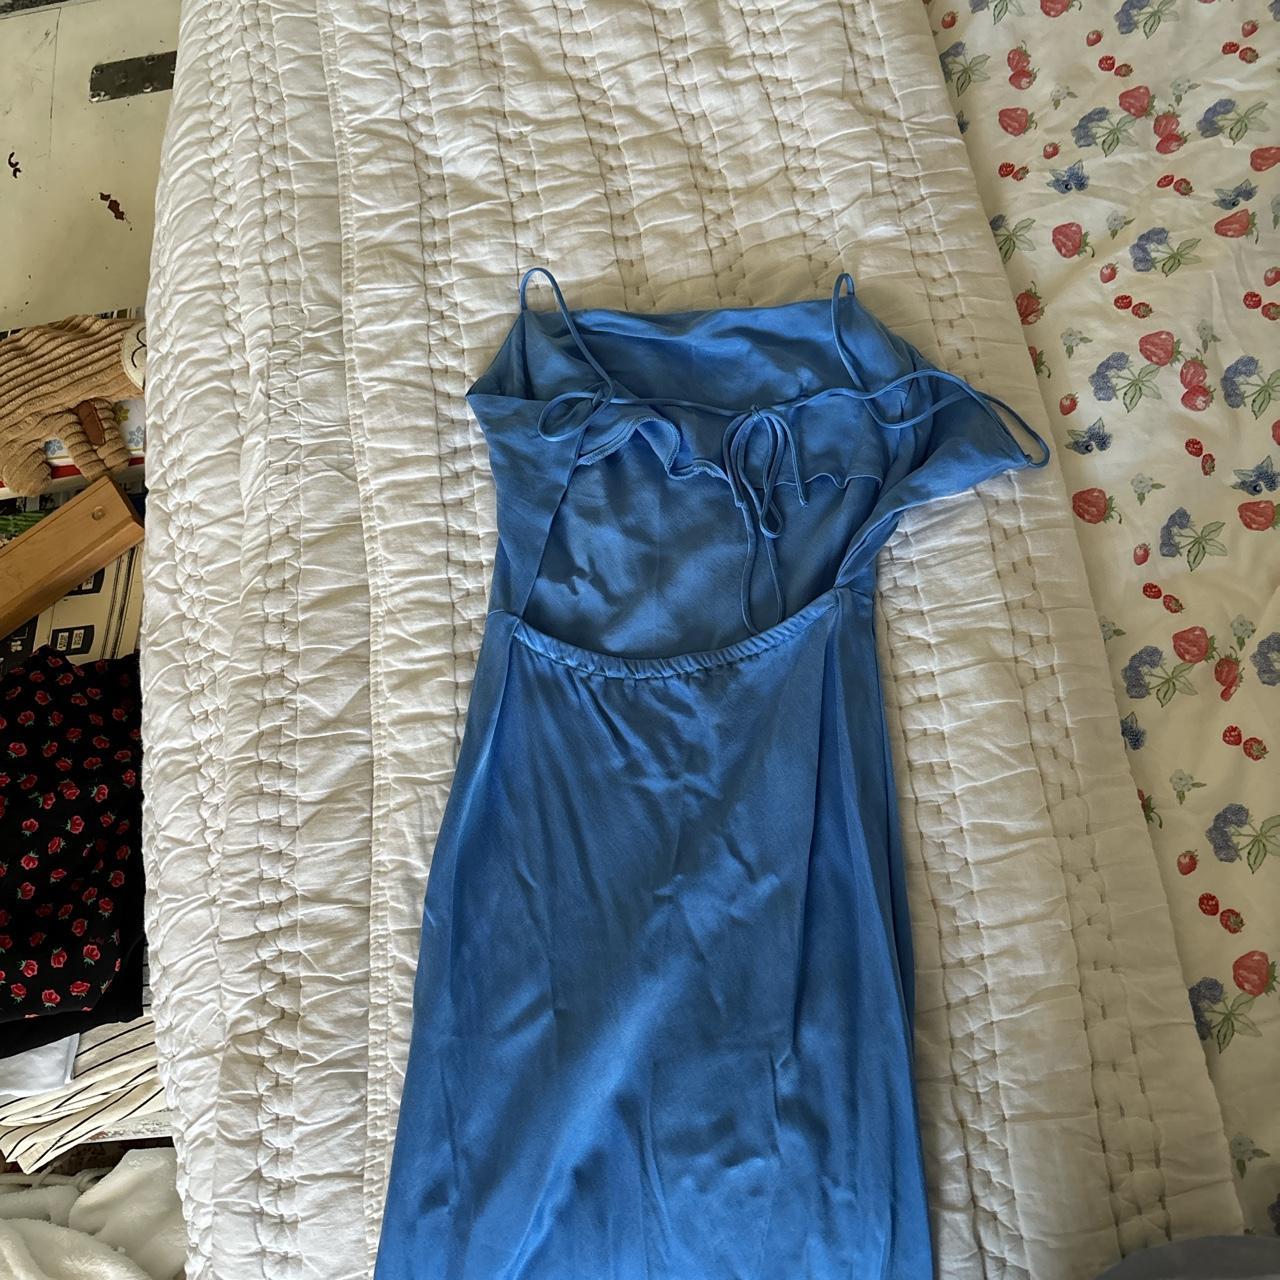 Djerf Avenue Women's Blue Dress (3)